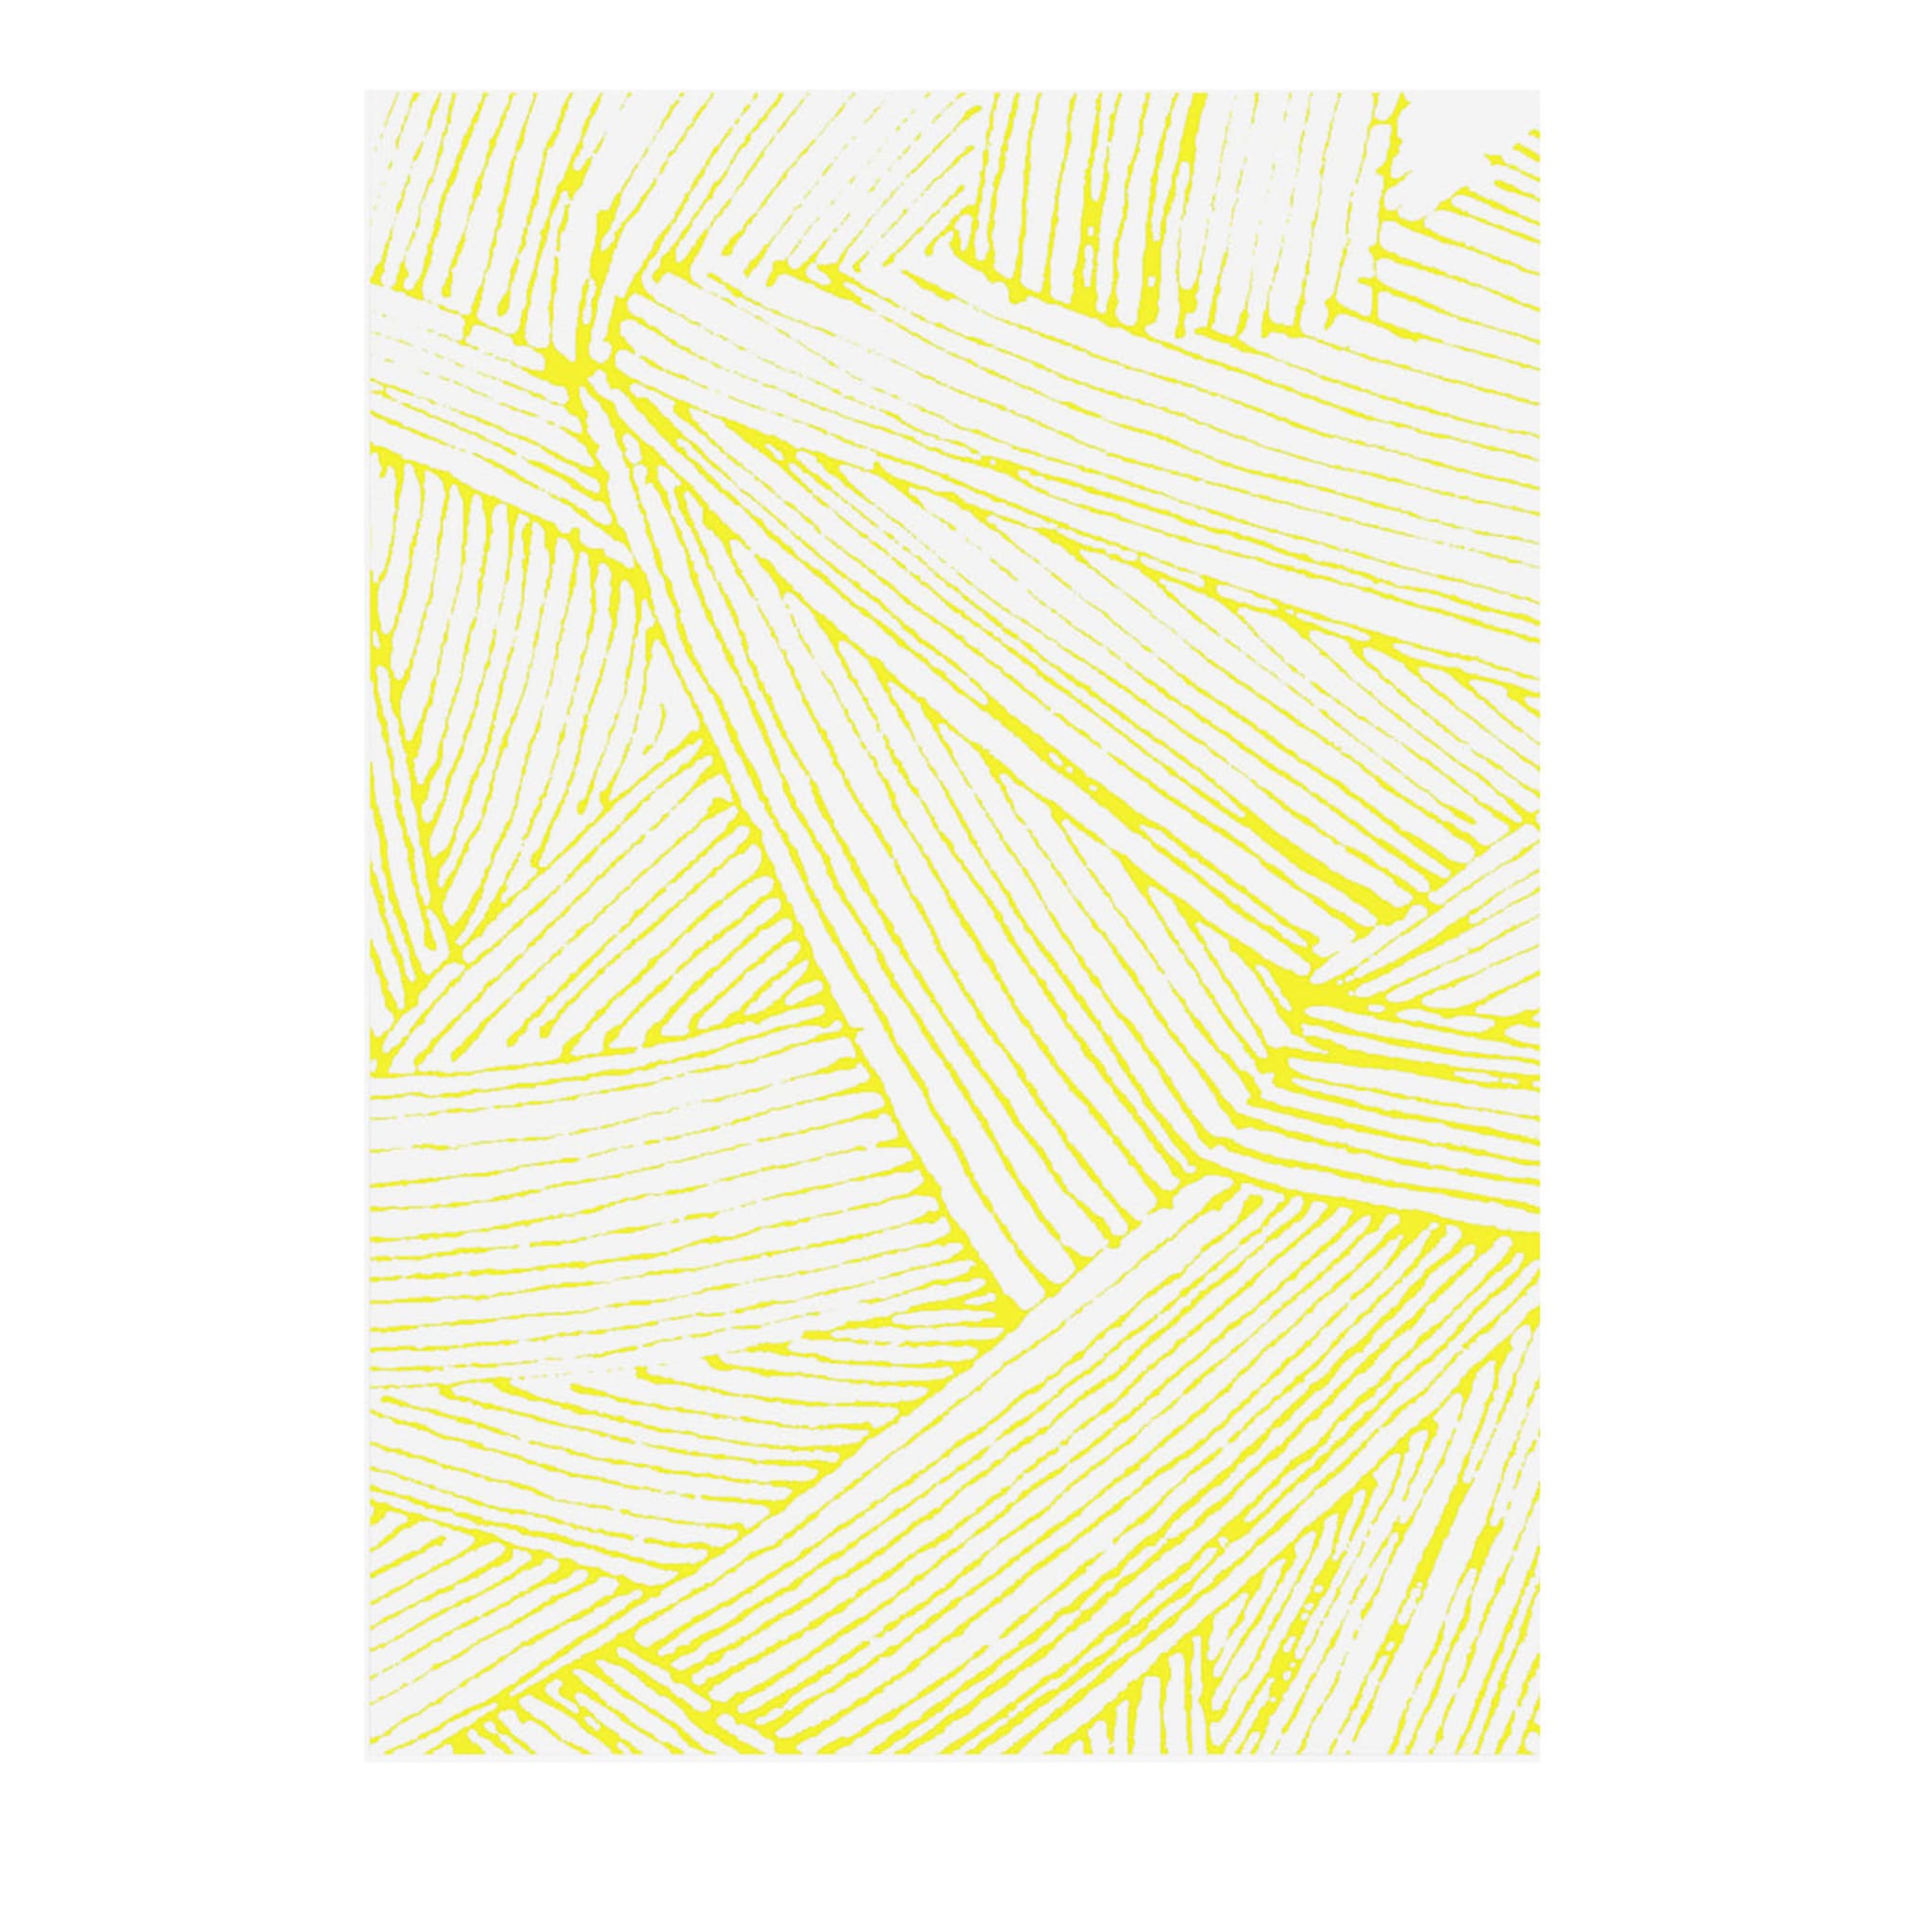 Coperta Tratto Bio giallo neon e bianco di Emilio Salvatore Leo - Vista principale